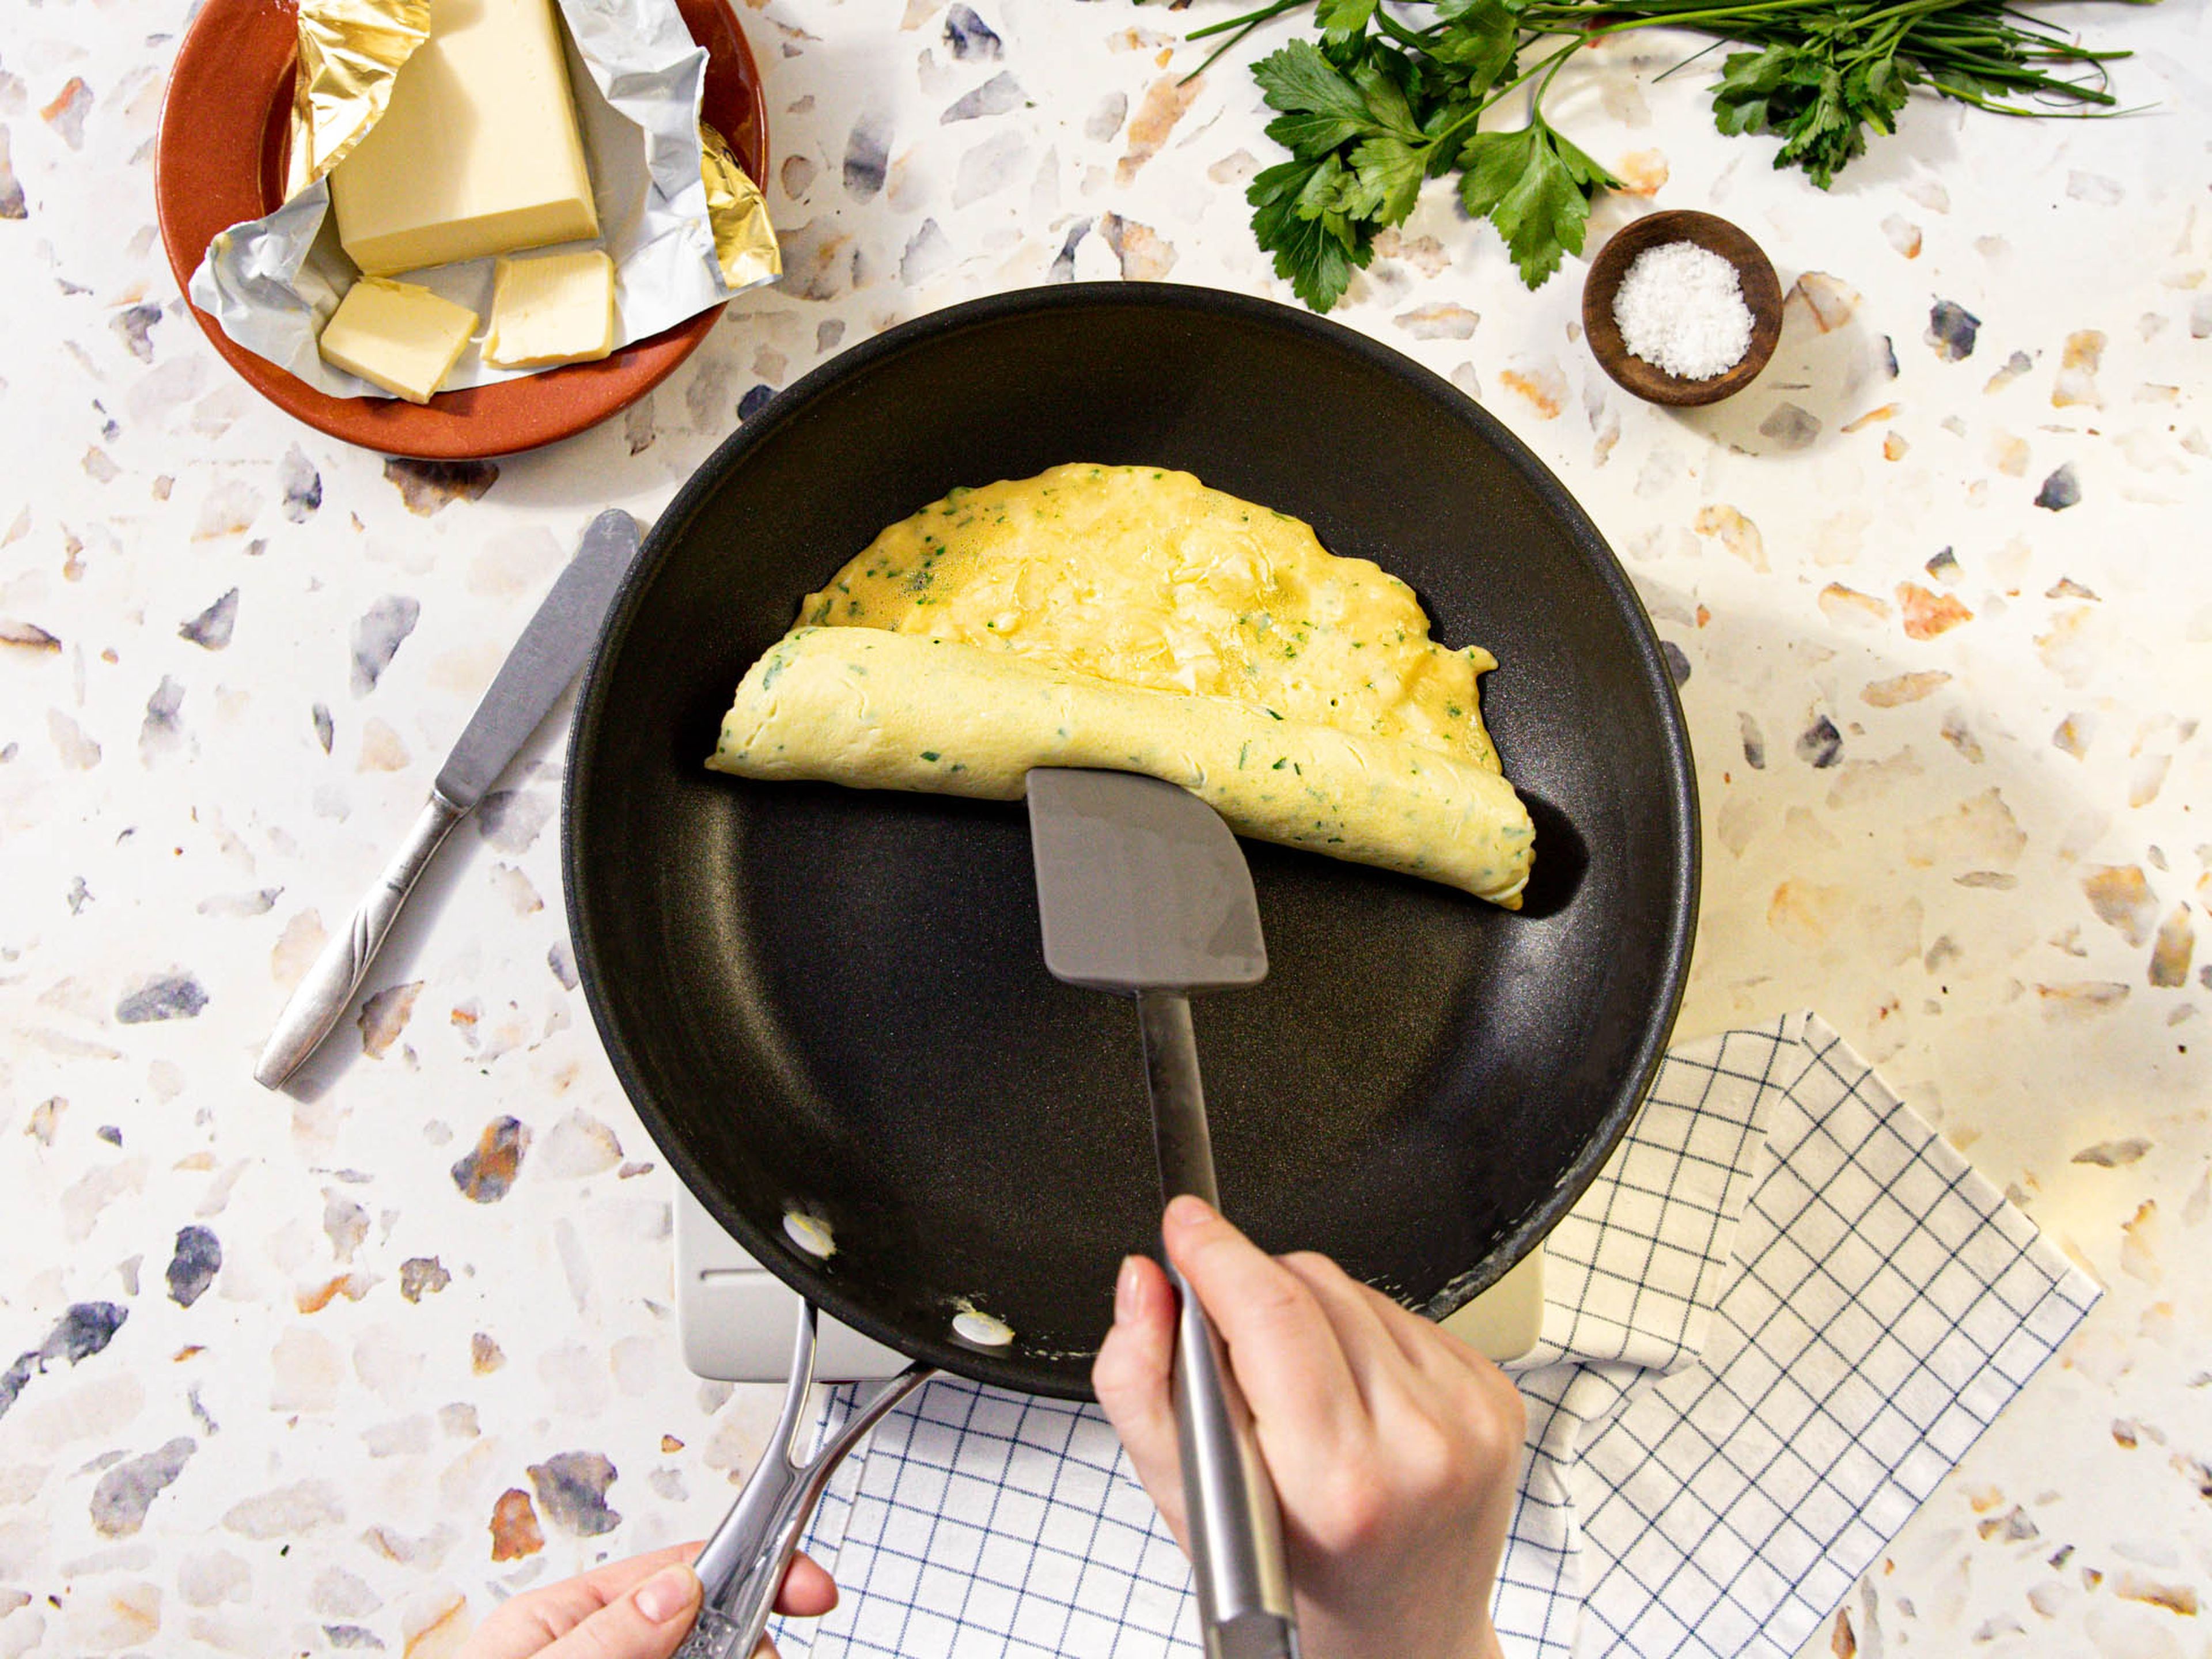 Käse über die Eier streuen. Wenn die Masse zu flüssig aussieht, ca. 20 Sek. ruhen lassen, dann den gegenüberliegenden Rand mit einem Pfannenwender anheben und leicht aufrollen. Vorsichtig auf einen Teller geben und mit den restlichen Kräutern und ggf. Butter garnieren. Guten Appetit!